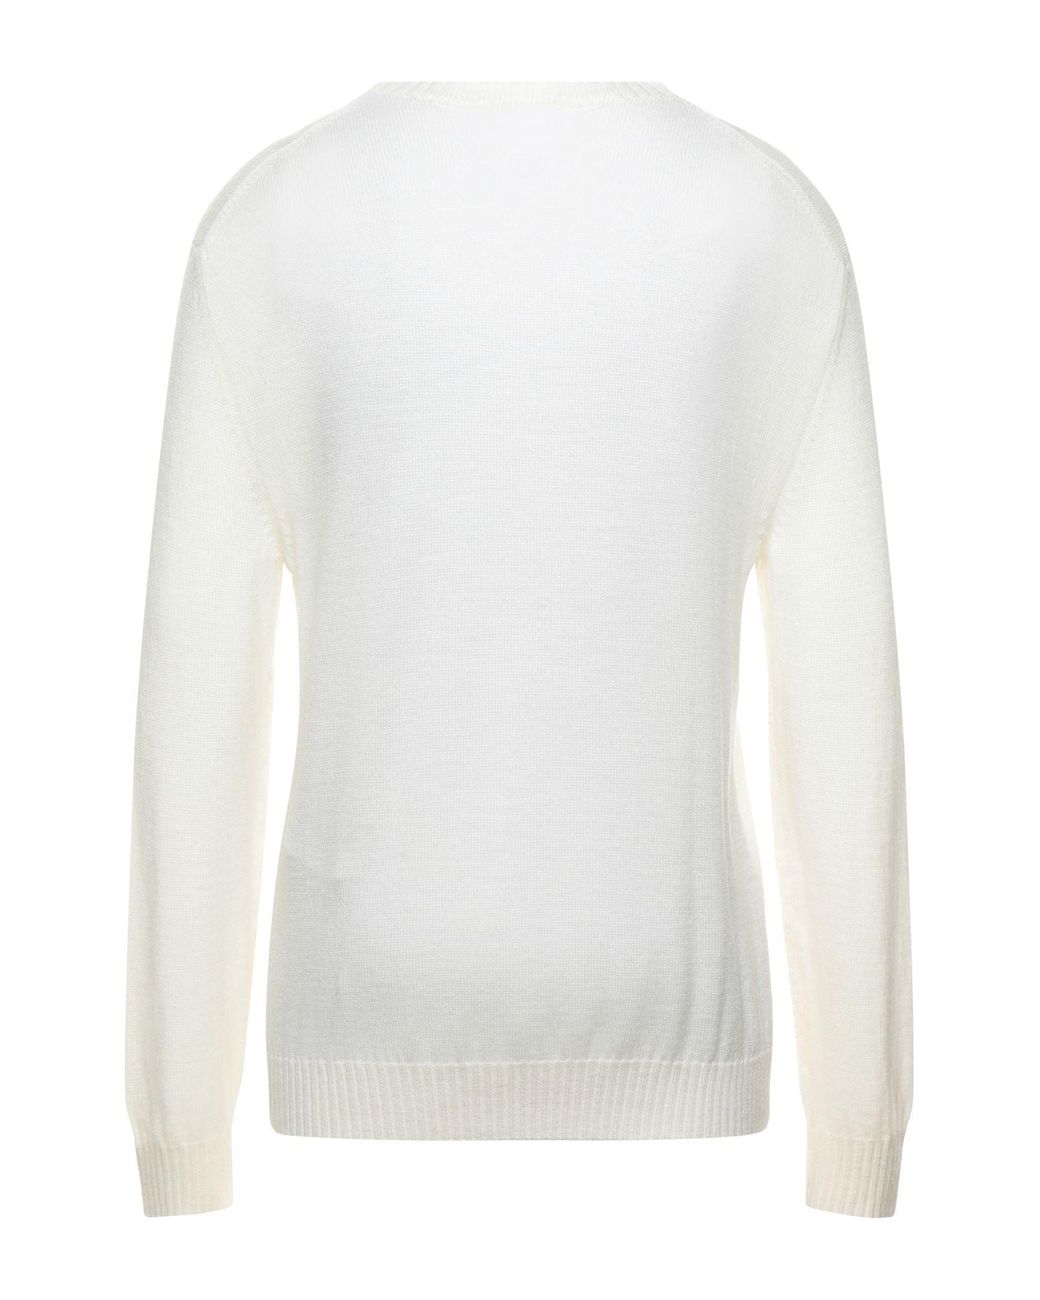 Jil Sander Sweater in Ivory (White) for Men - Lyst